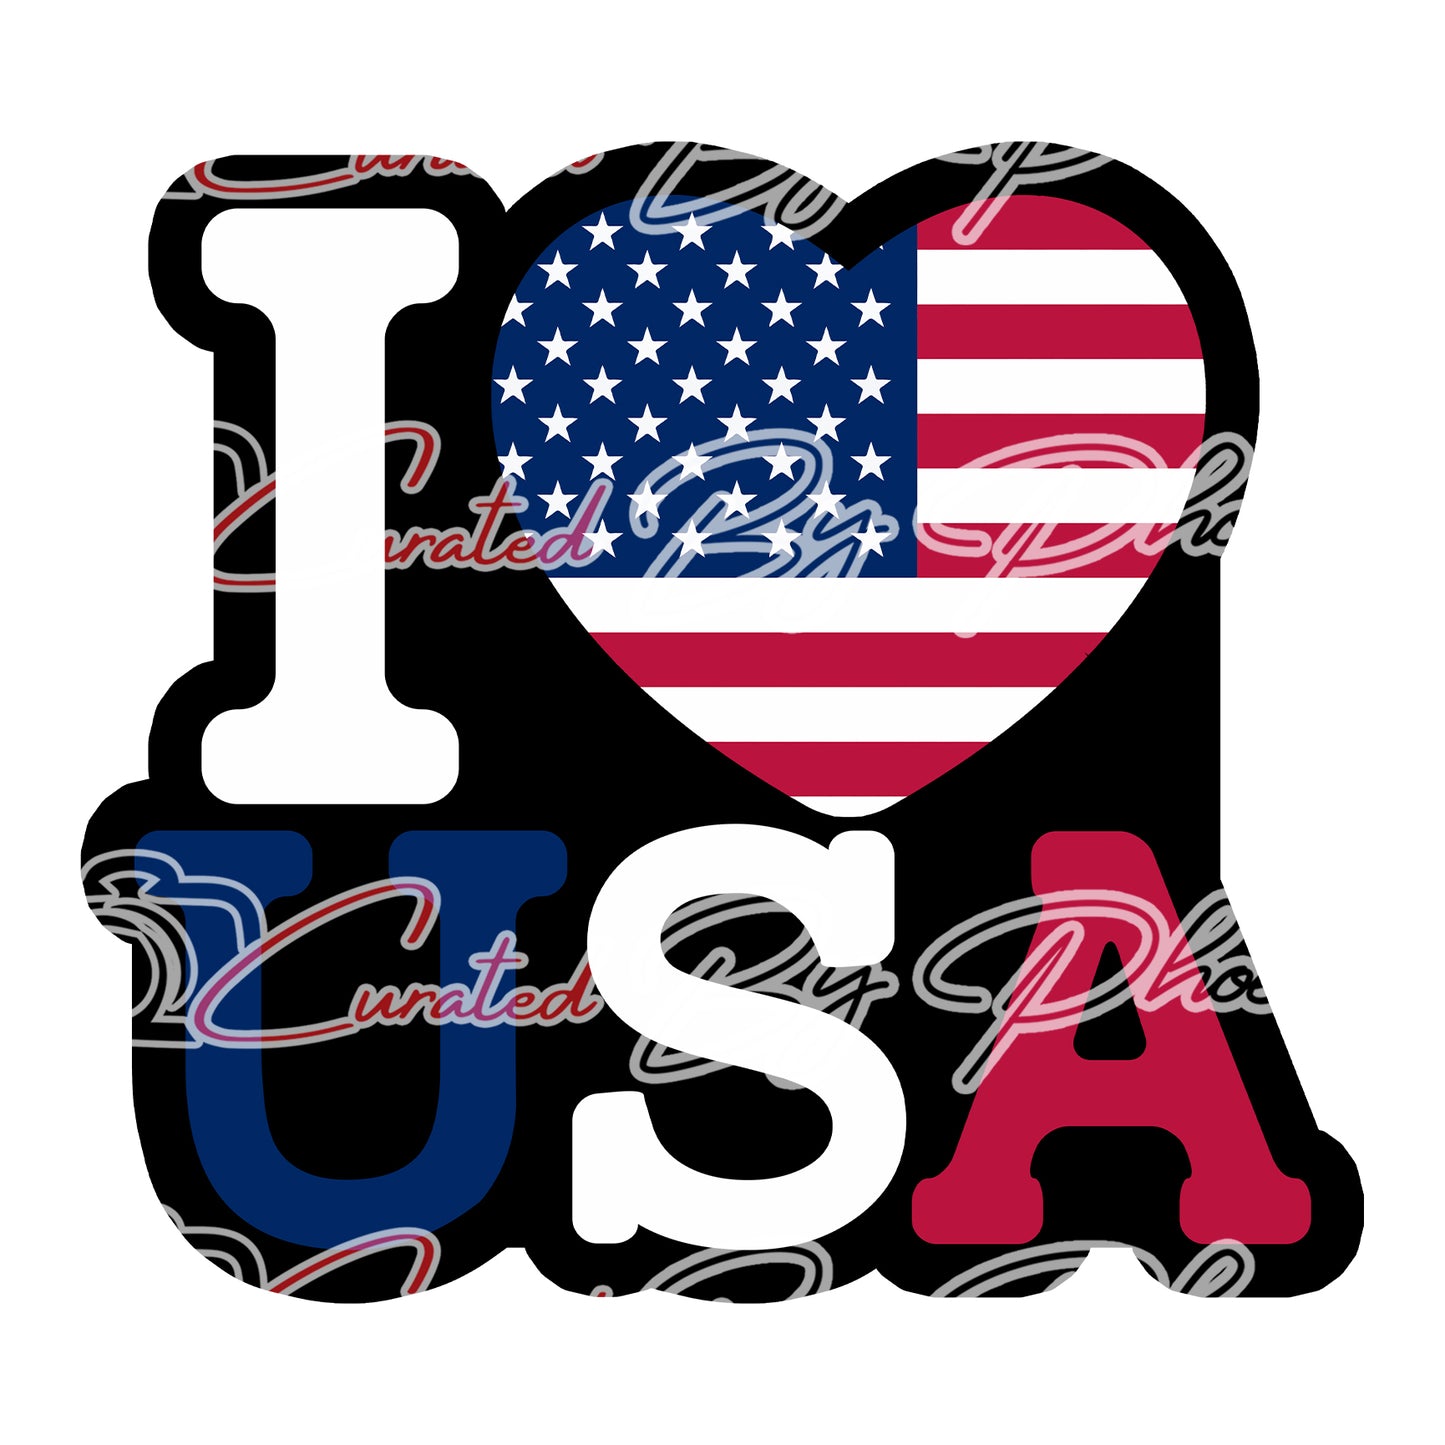 I Love USA